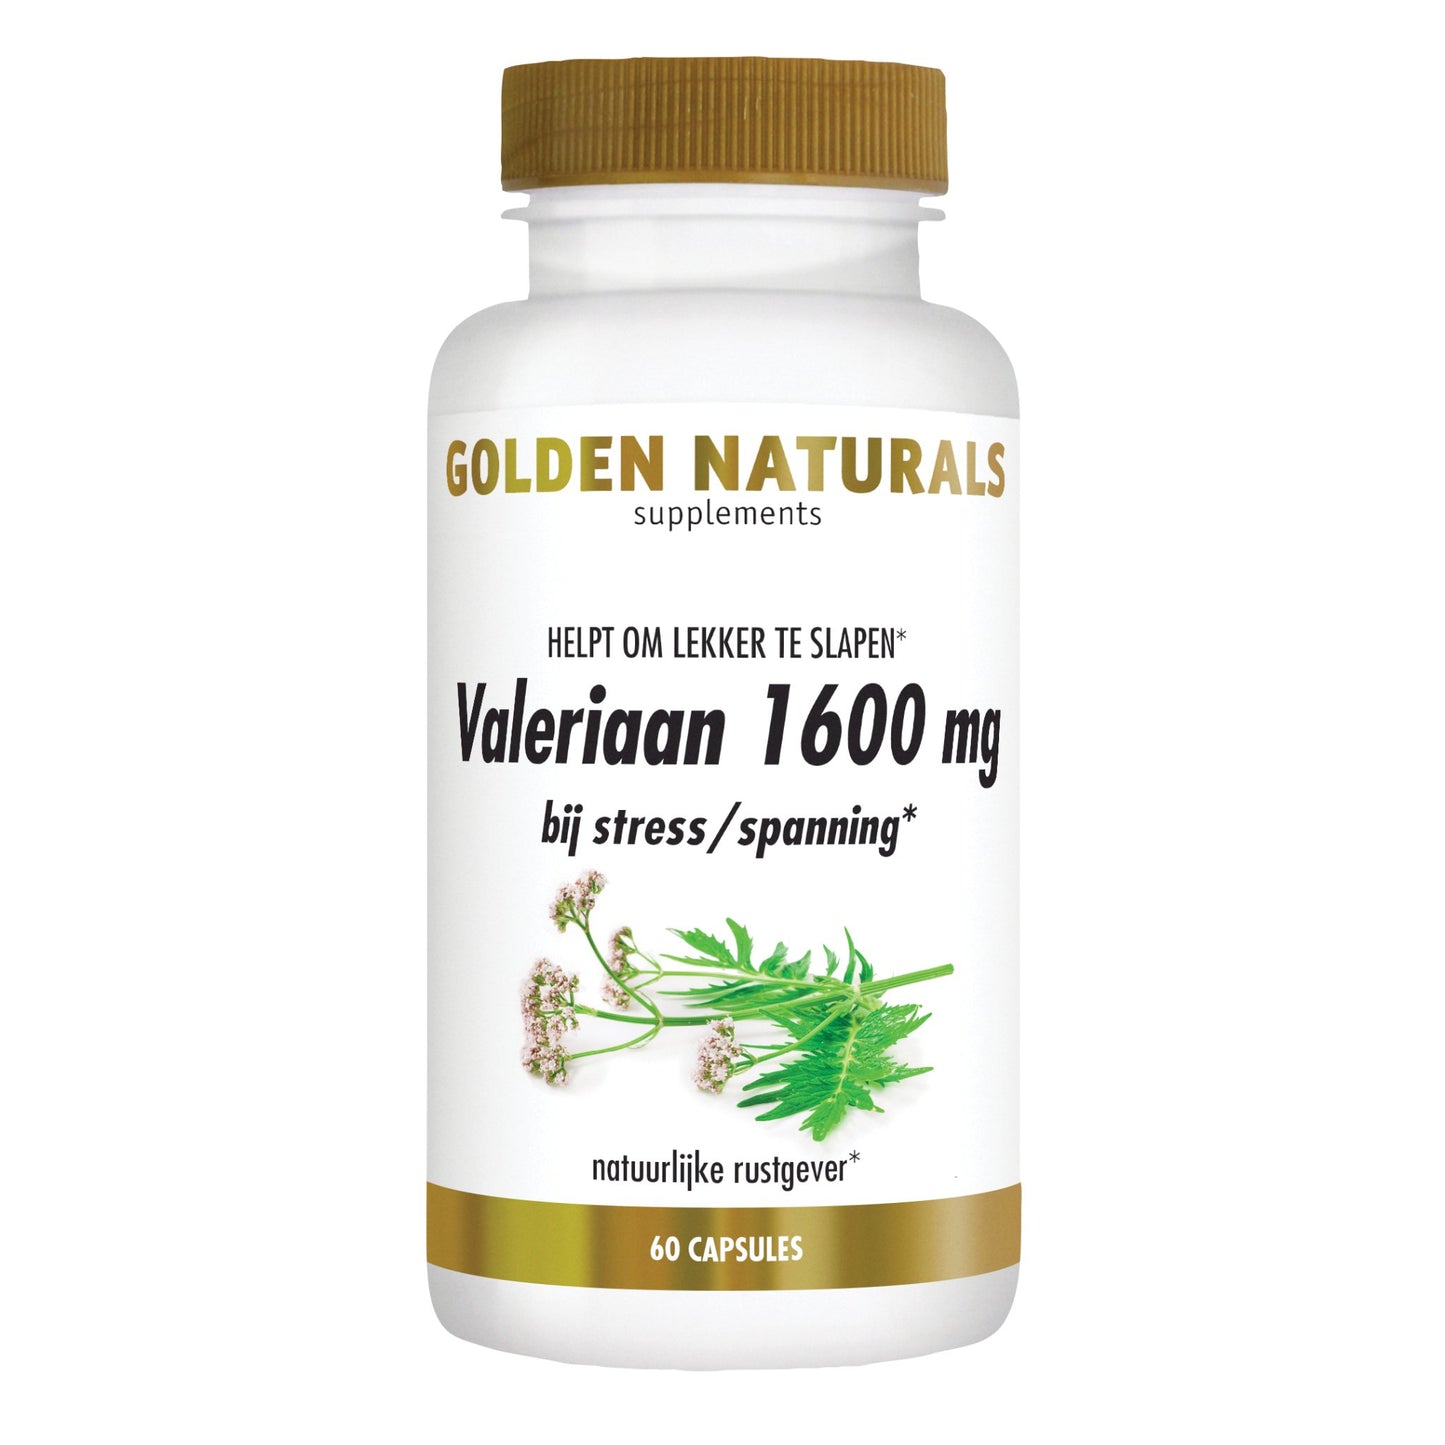 Valeriaan 1600 mg - 60 - veganistische capsules Supplement Golden Naturals   